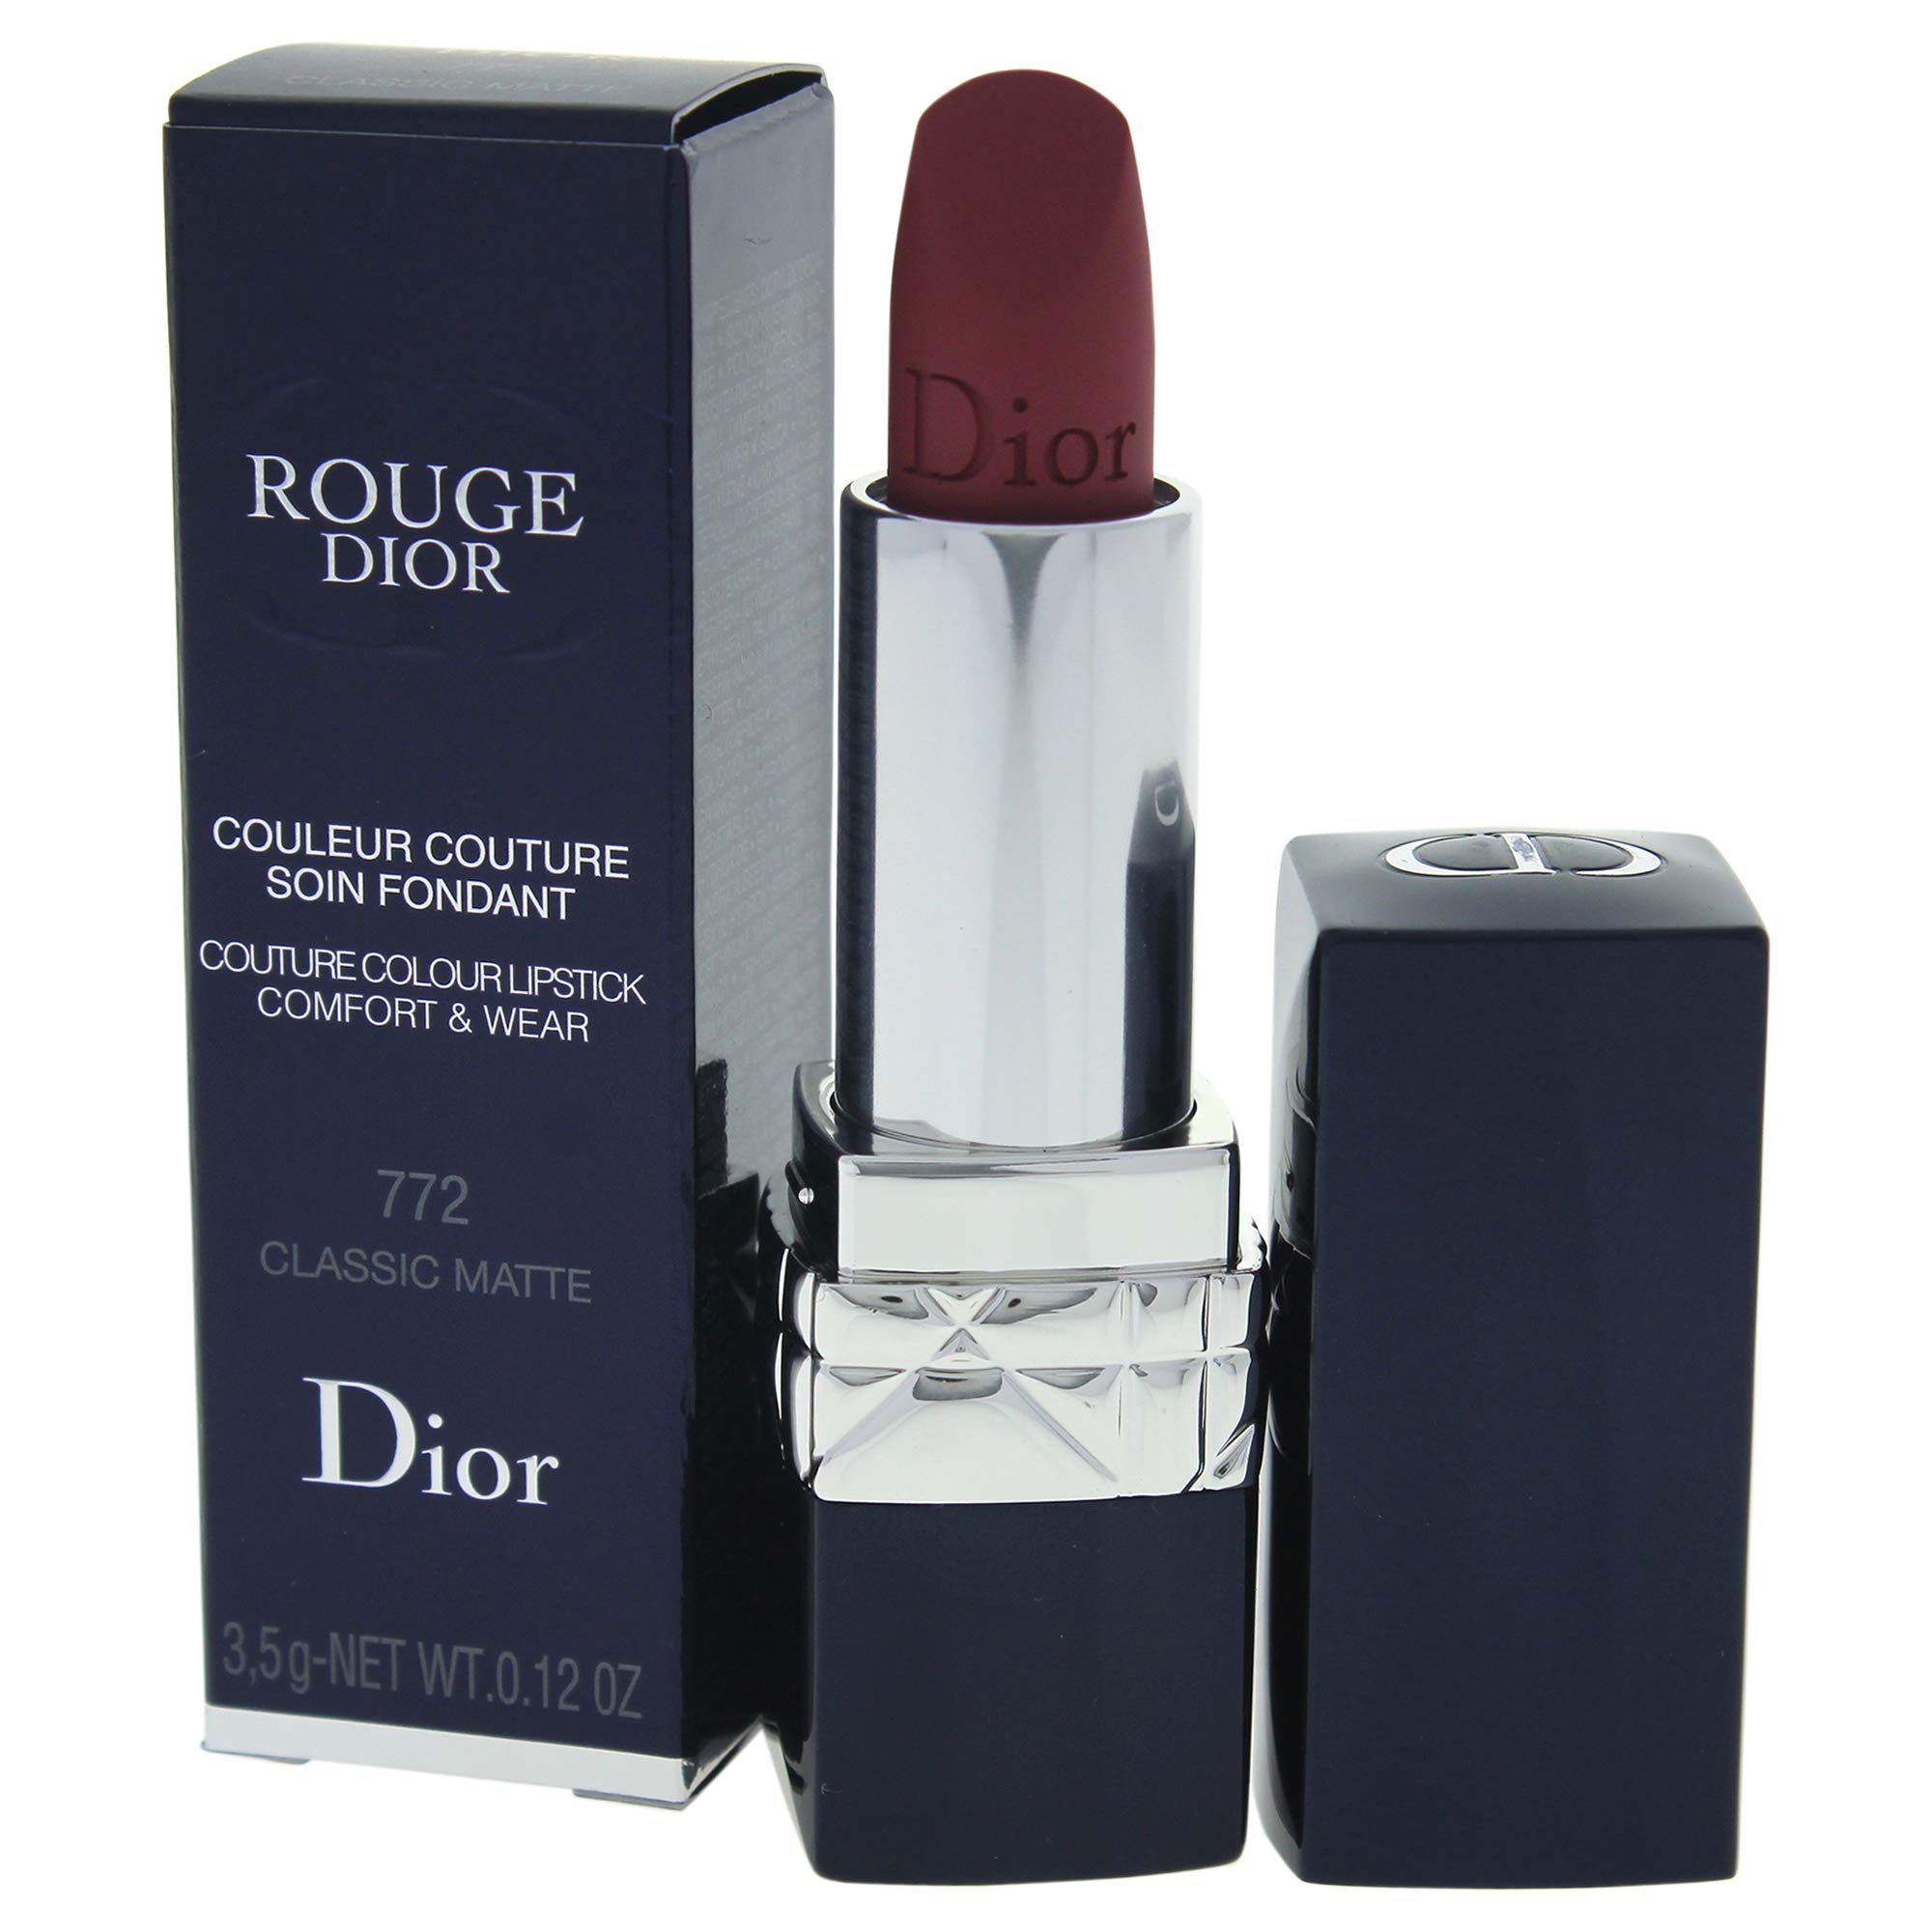 Mua Son Dior Limited 772 Classic New Look Màu Hồng Đất chính hãng cao cấp  Giá tốt